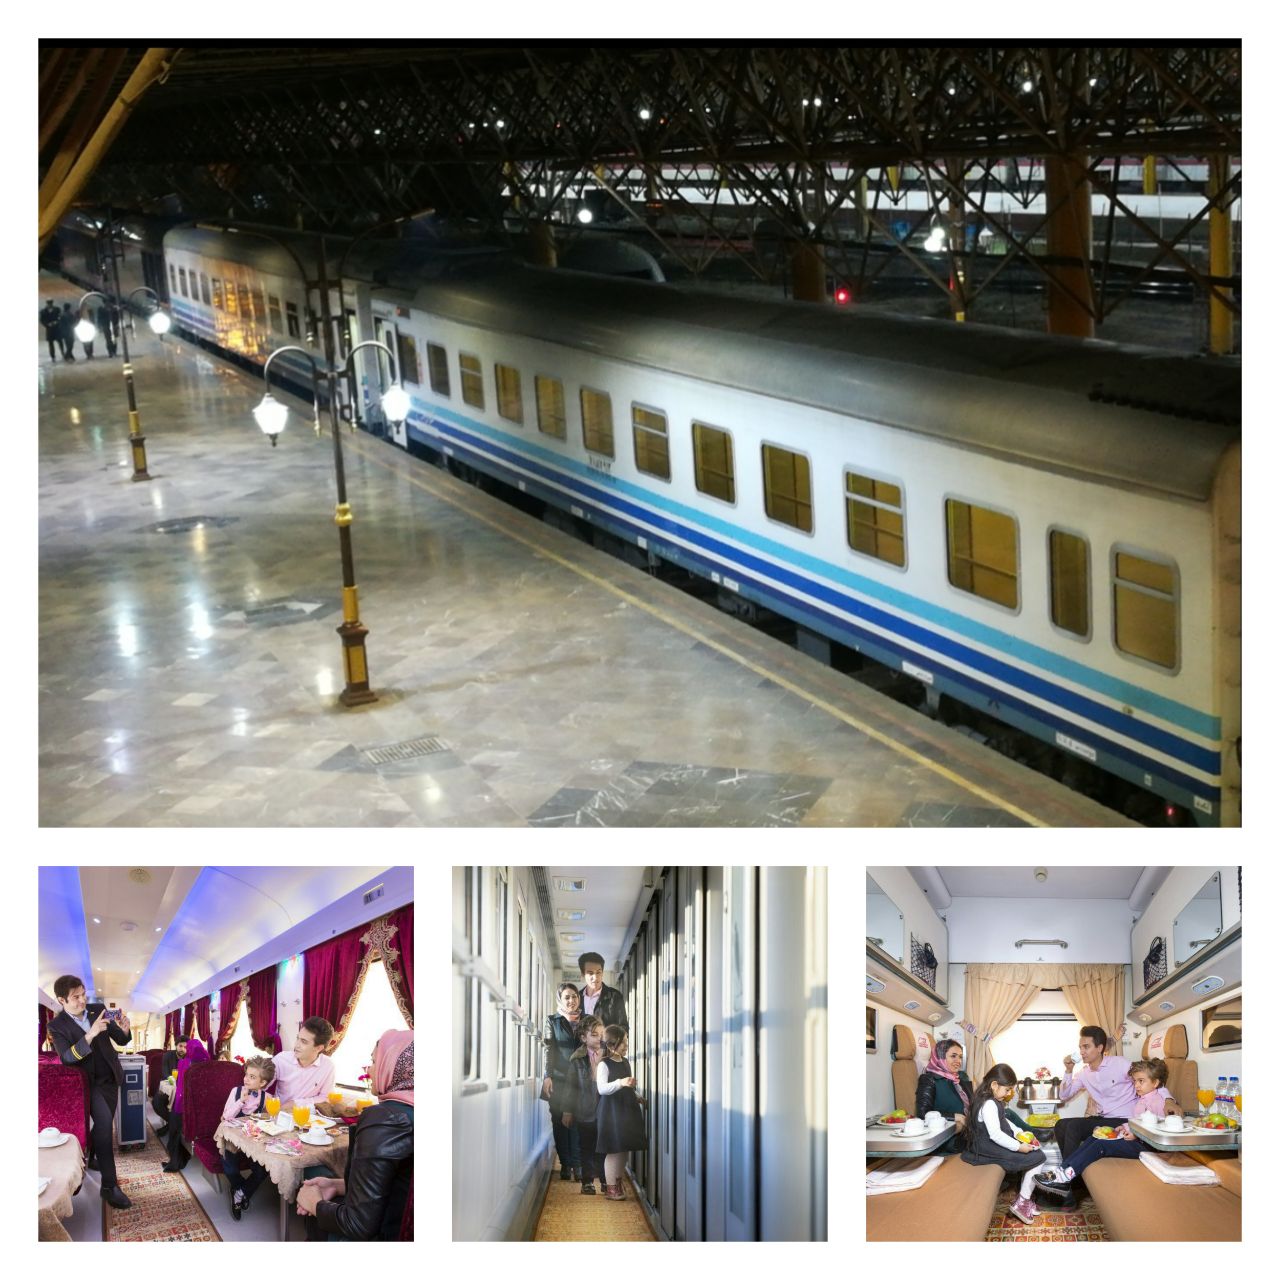 اداره کل راه آهن تهران، رتبه نخست جابجایی مسافر در سطح شبکه ریلی را کسب کرد